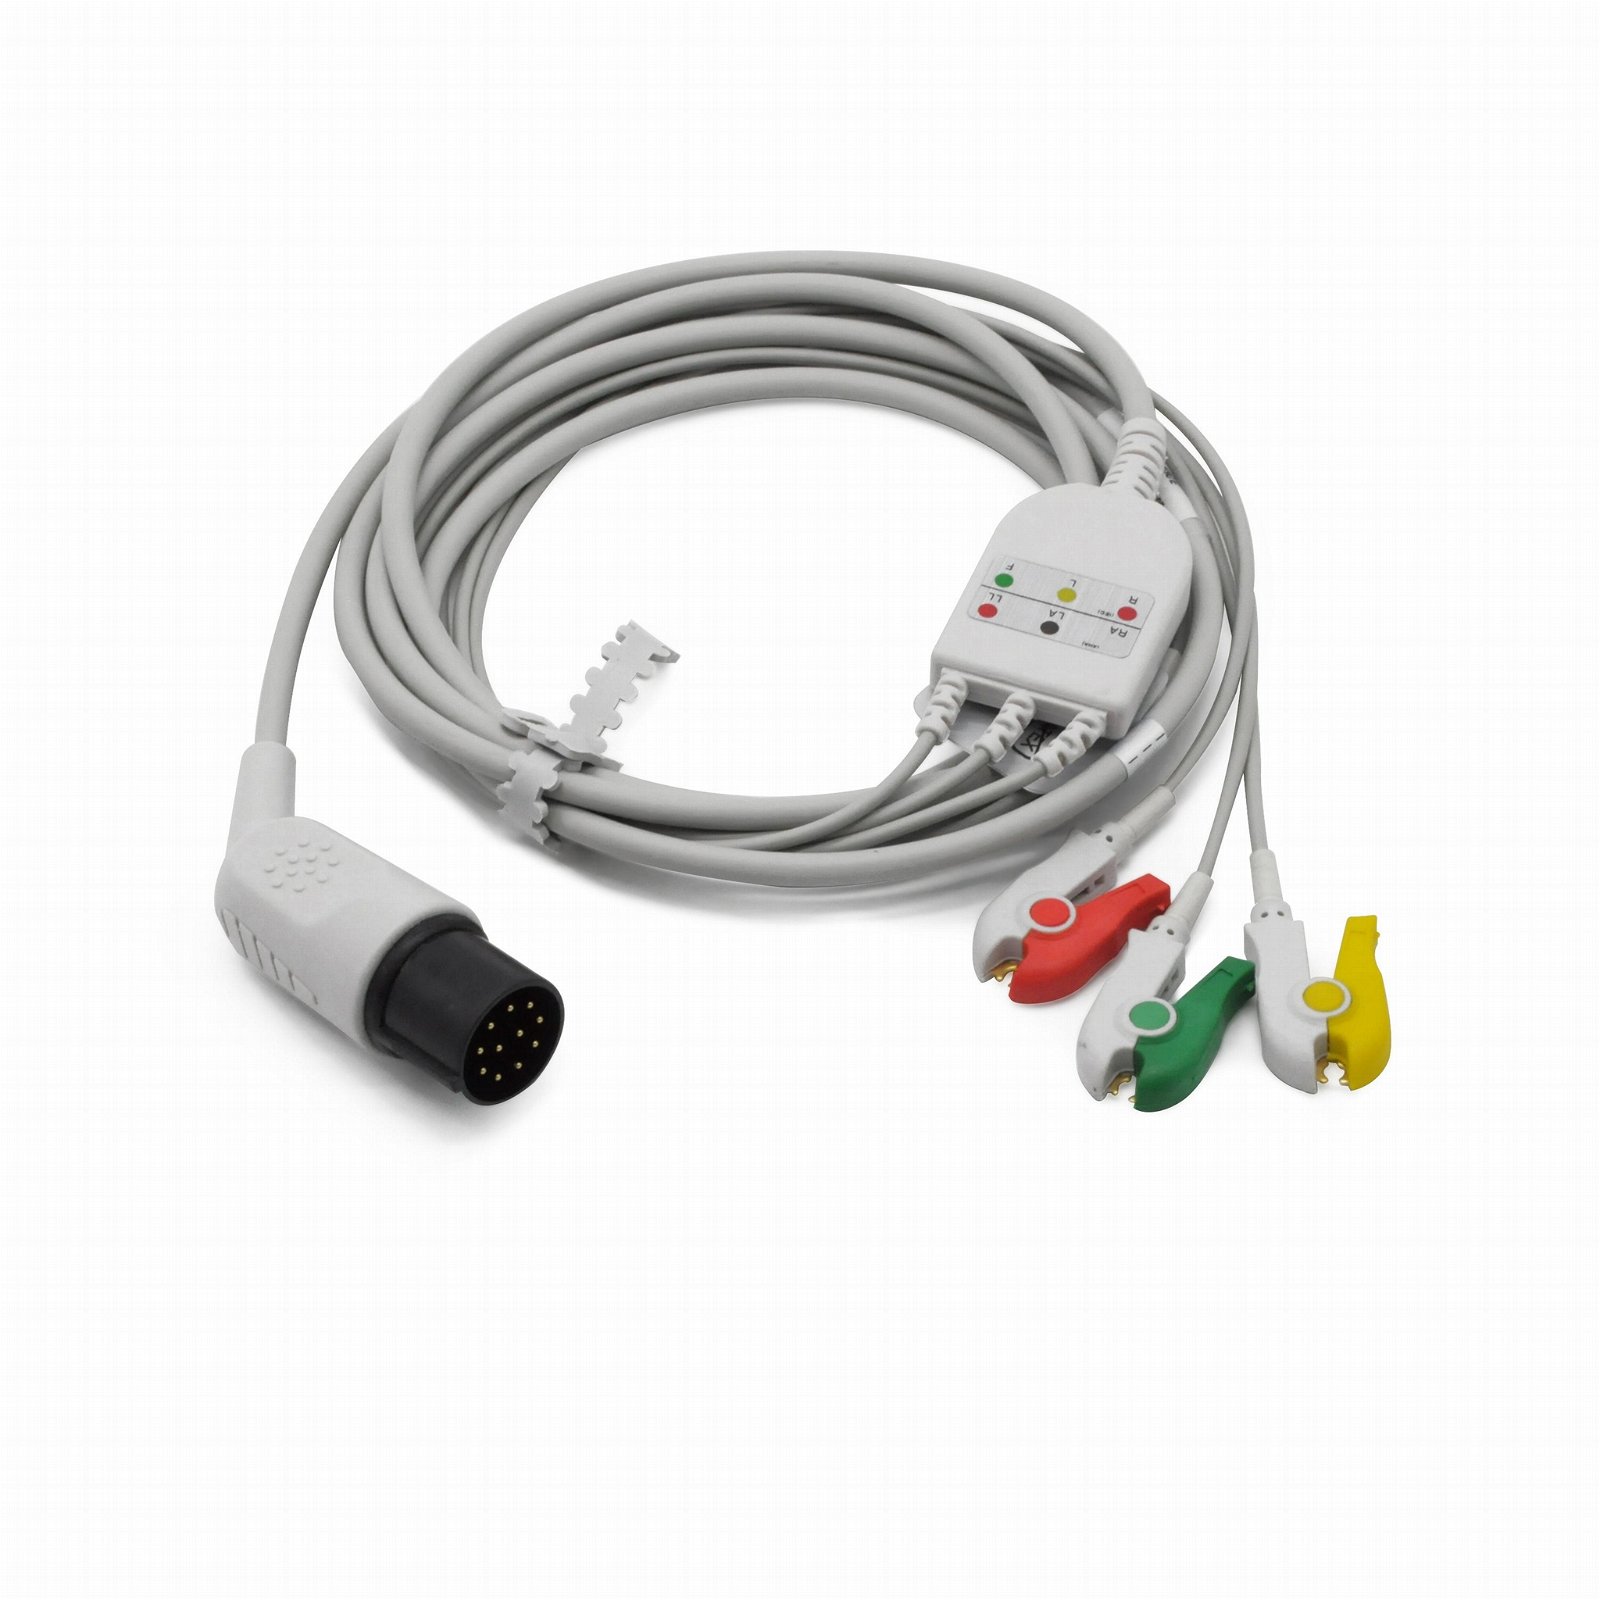 Nihon Kohden defibrillator TEC-5200A ECG cable with lead wires,11 pins  1